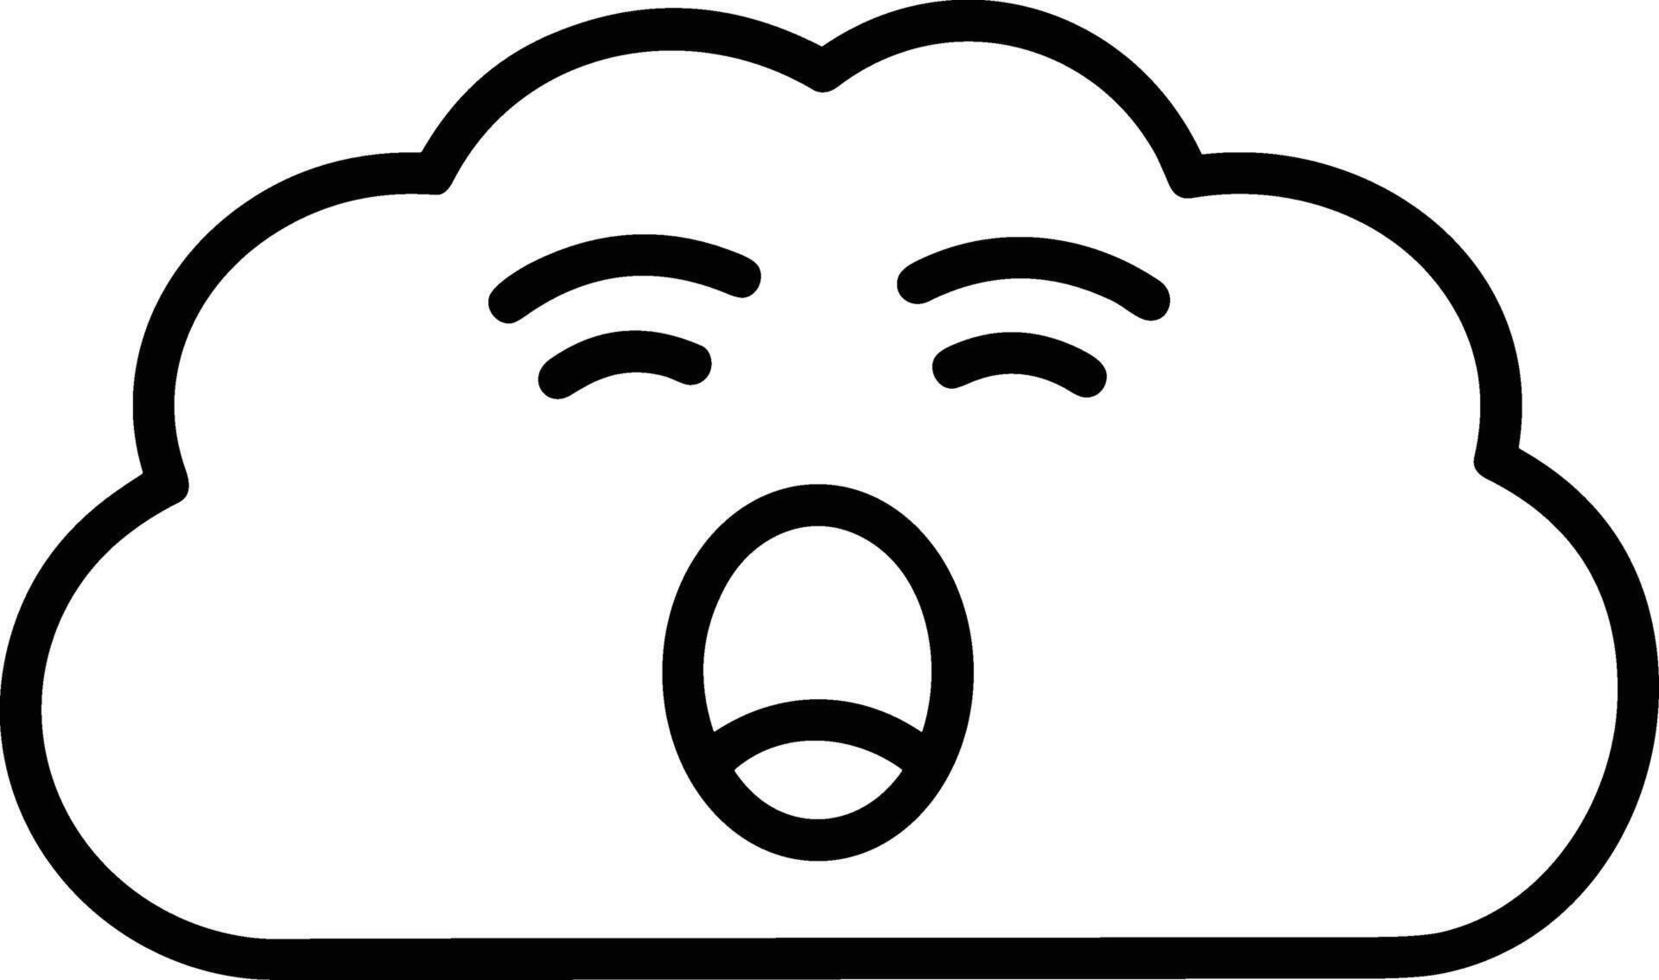 Cloud icon symbol vector image